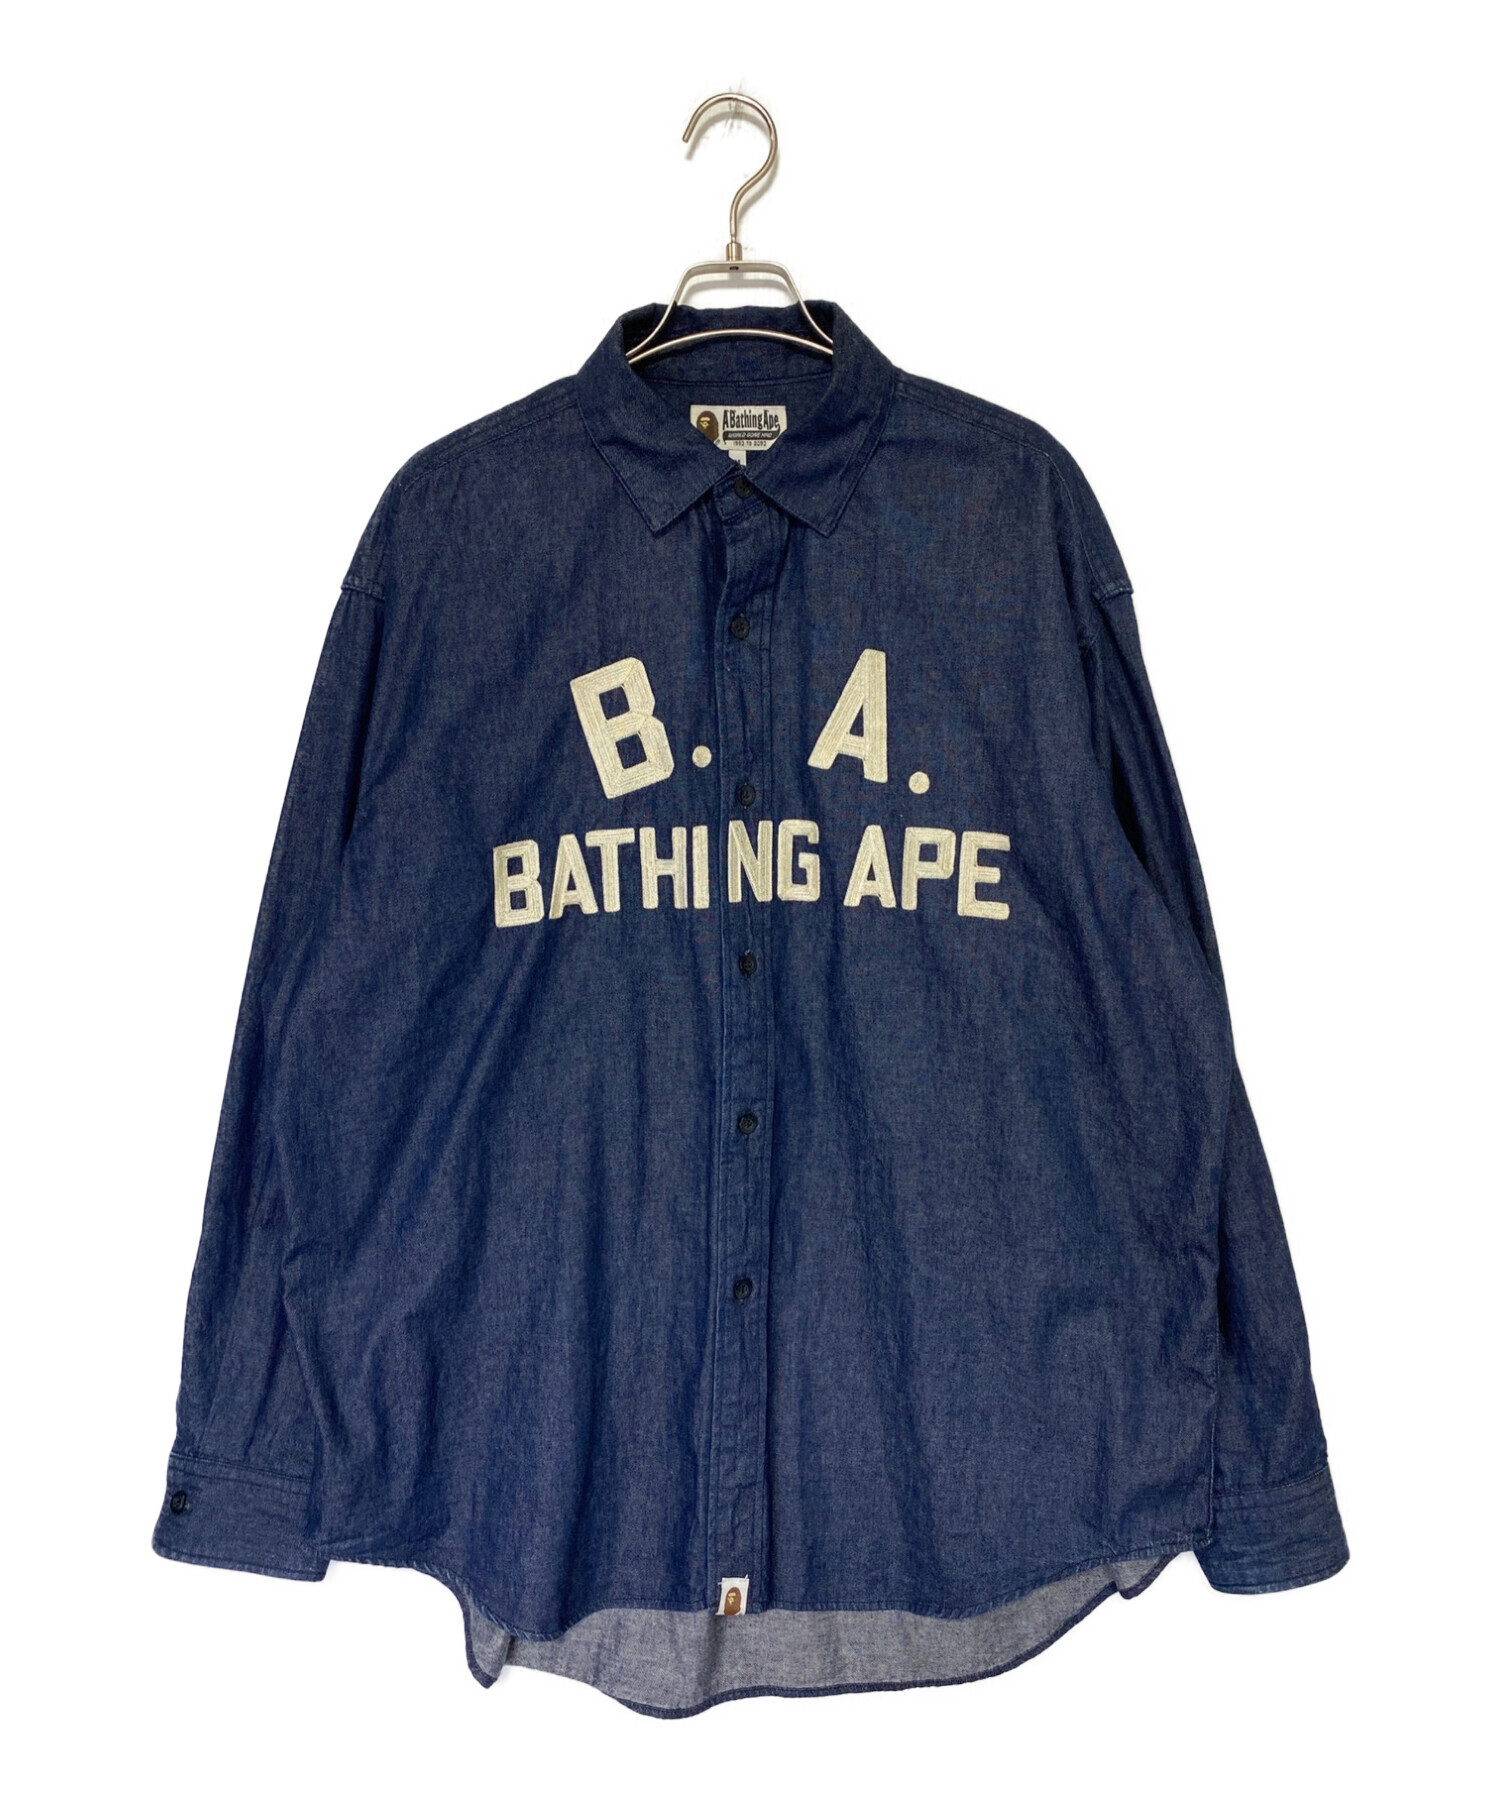 A BATHING APE (ア ベイシング エイプ) デニムシャツ インディゴ サイズ:M